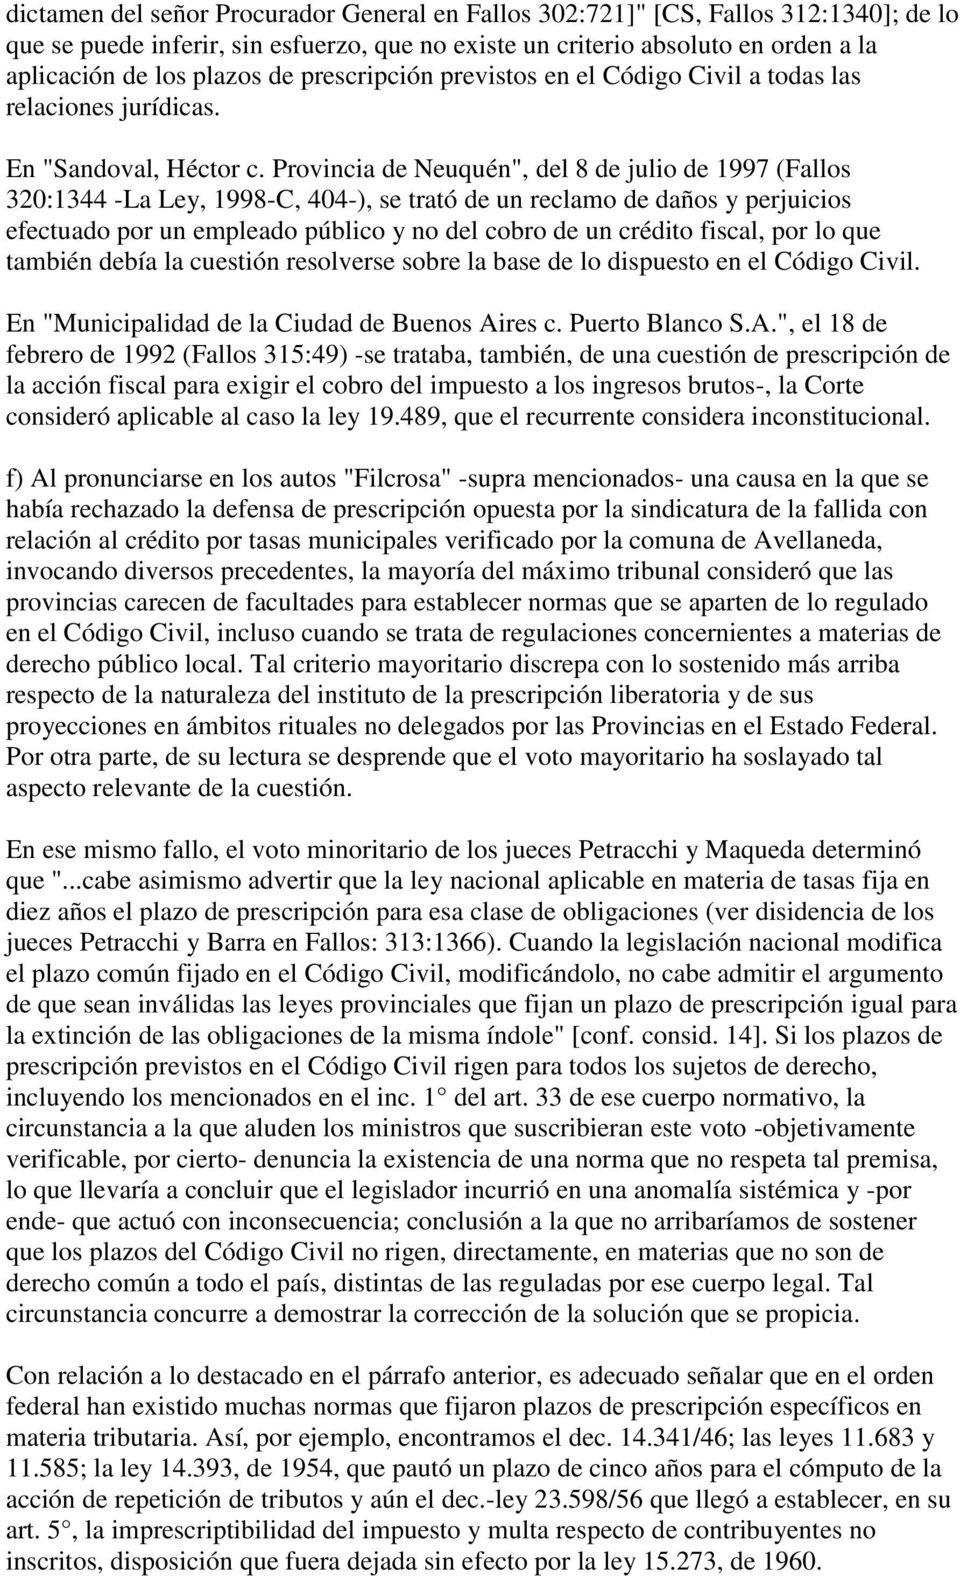 Provincia de Neuquén", del 8 de julio de 1997 (Fallos 320:1344 -La Ley, 1998-C, 404-), se trató de un reclamo de daños y perjuicios efectuado por un empleado público y no del cobro de un crédito